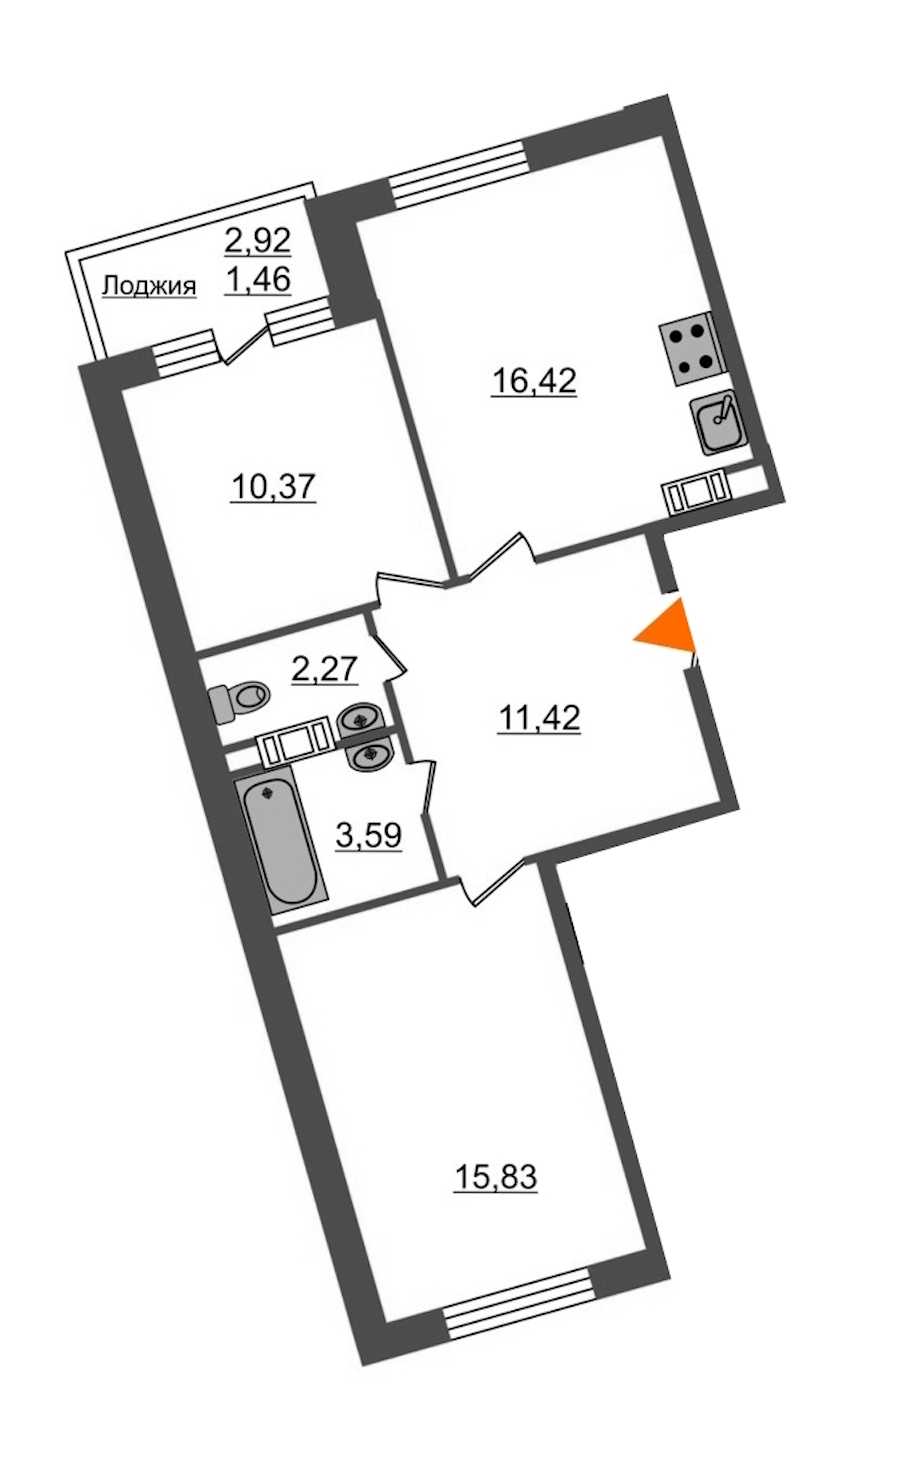 Двухкомнатная квартира в : площадь 61.36 м2 , этаж: 12 – купить в Санкт-Петербурге